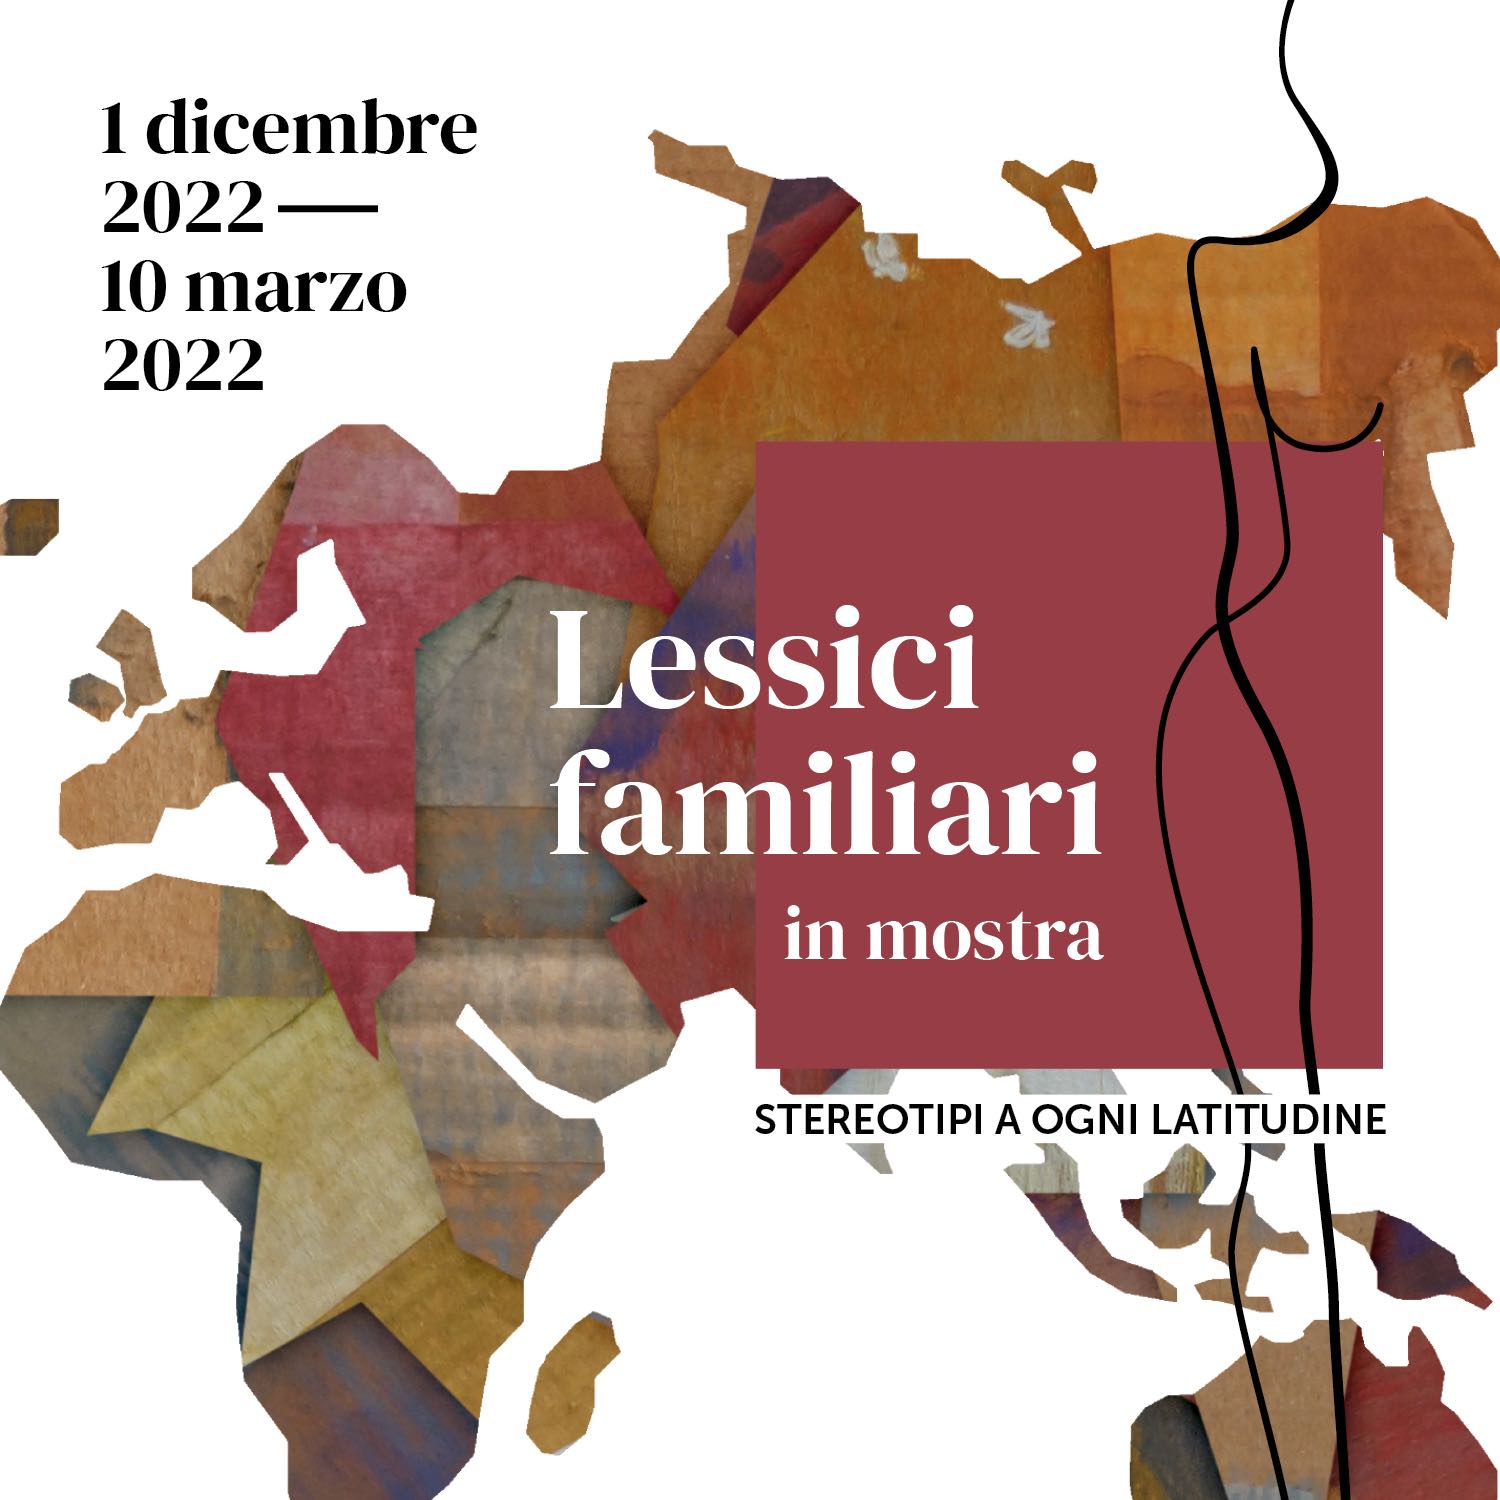 Lessici Familiari - Mostra a Fidenza - Centro Antiviolenza di Parma